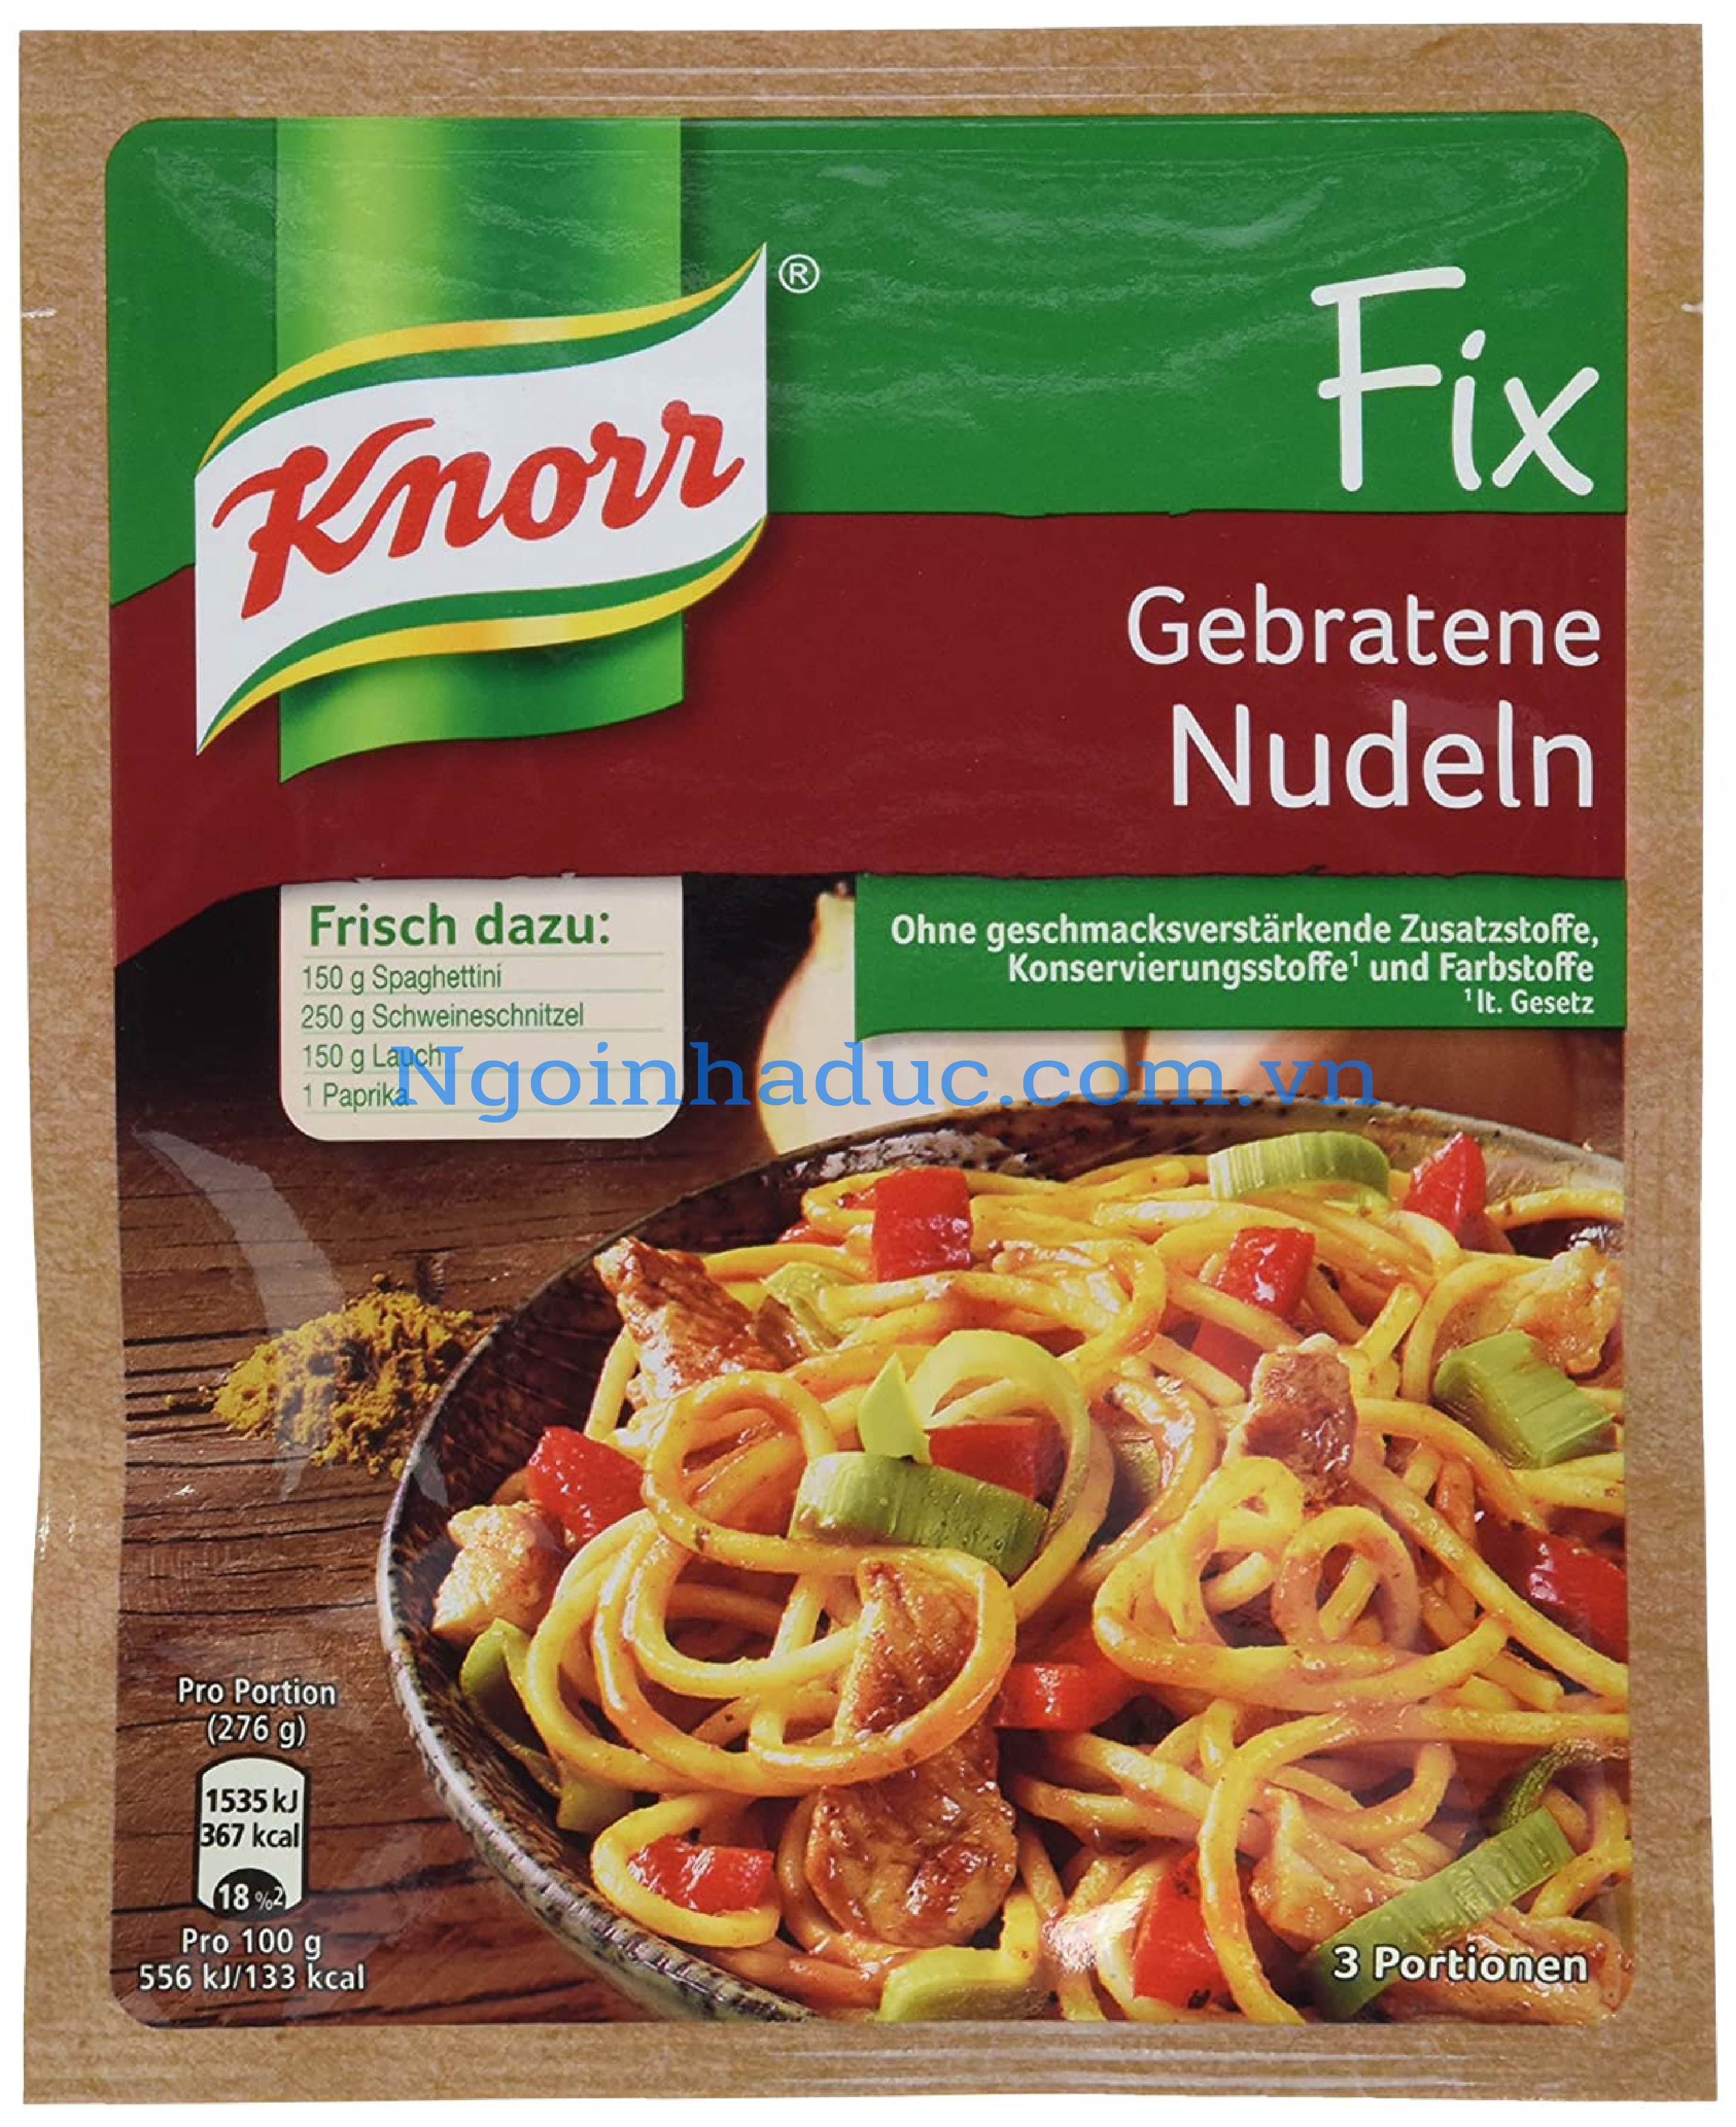 Sốt mỳ Ý Knorr